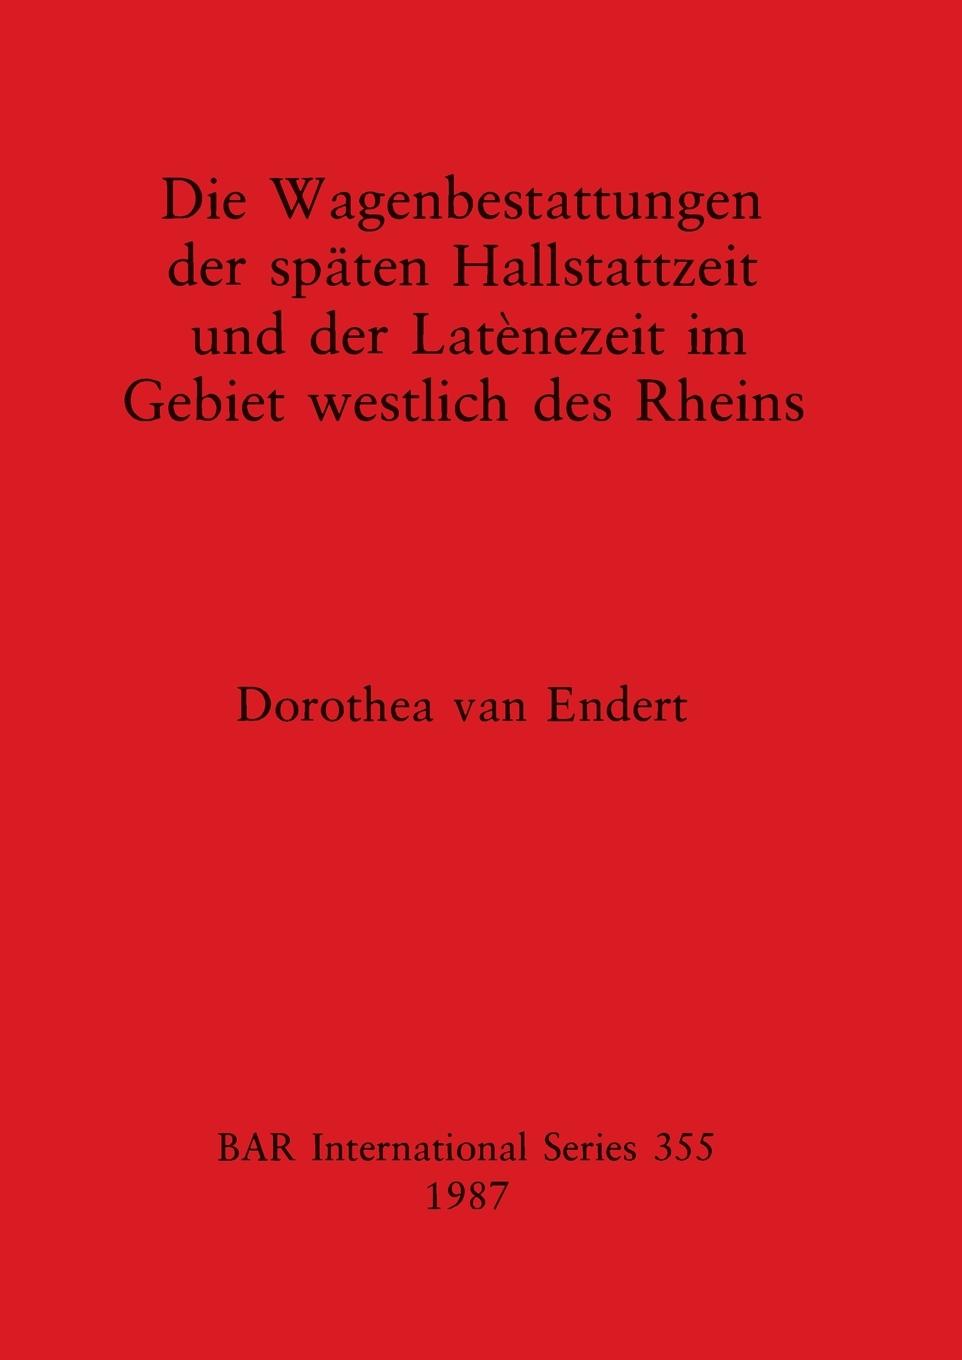 Die Wagenbestattungen der spaeten Hallstattzeit und der Latènezeit im Gebiet westlich des Rheins - Endert, Dorothea van